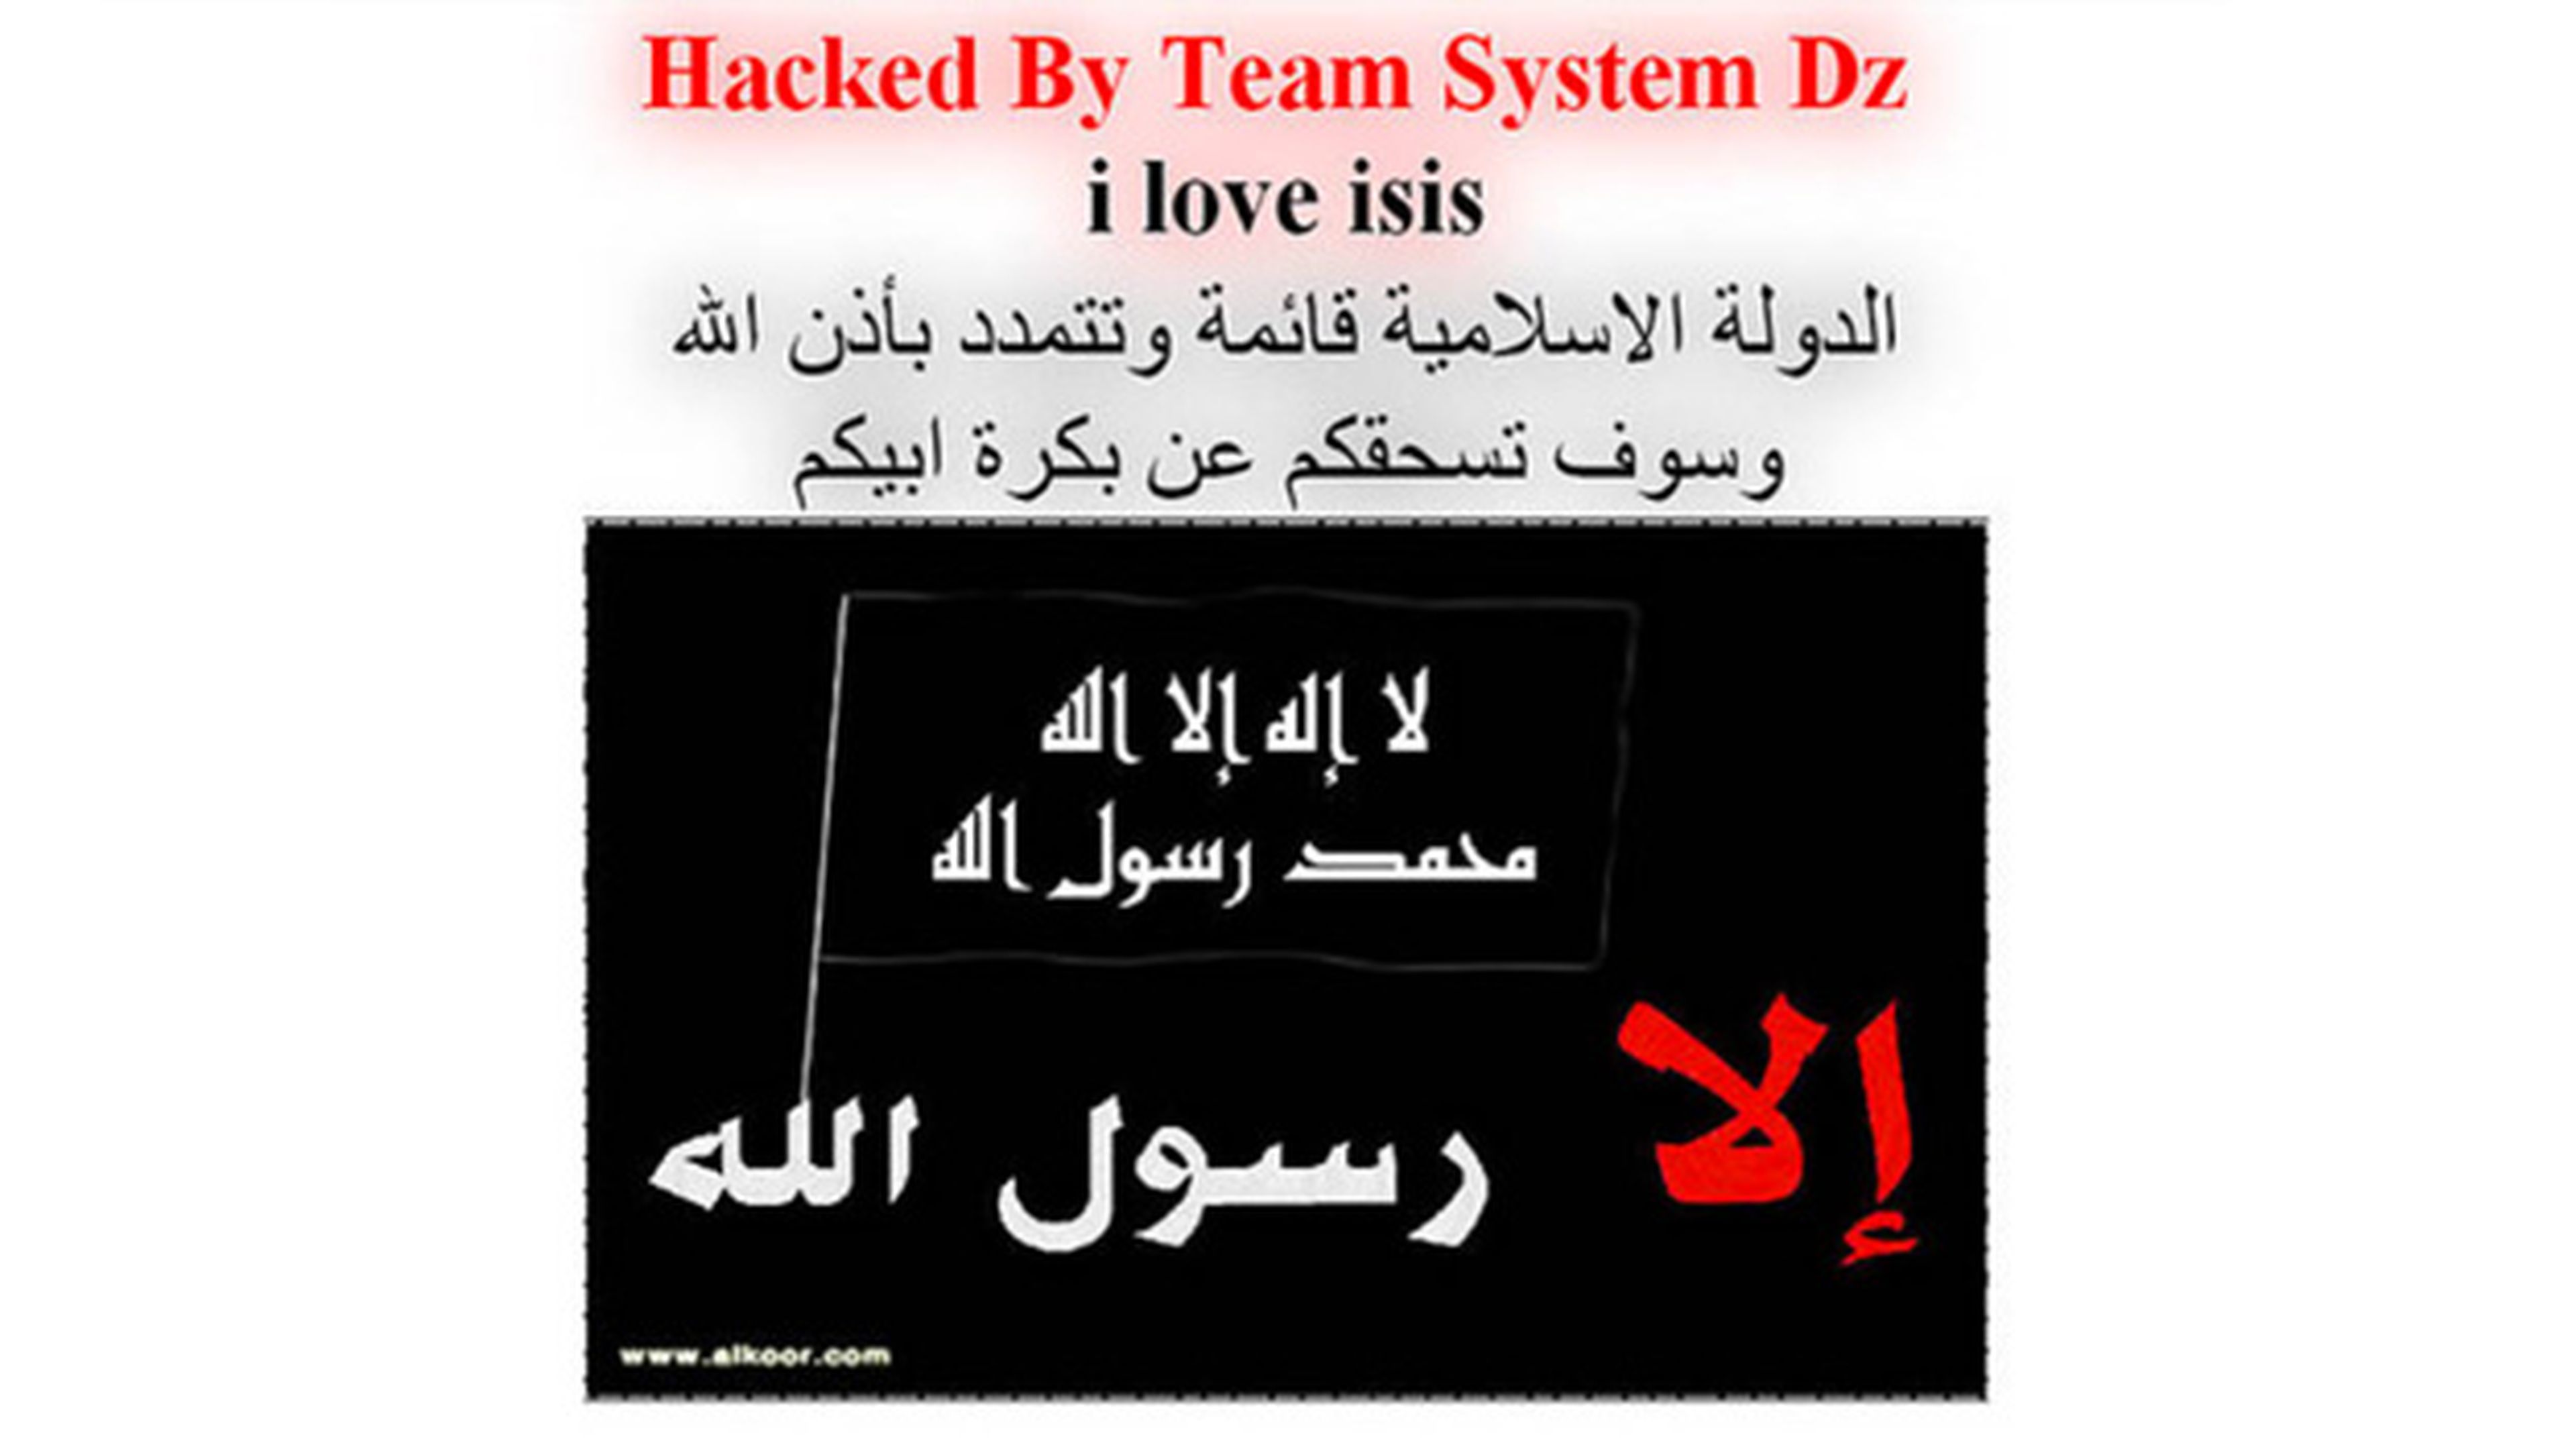 Islamistas hackean webs ayuntamientos navarros